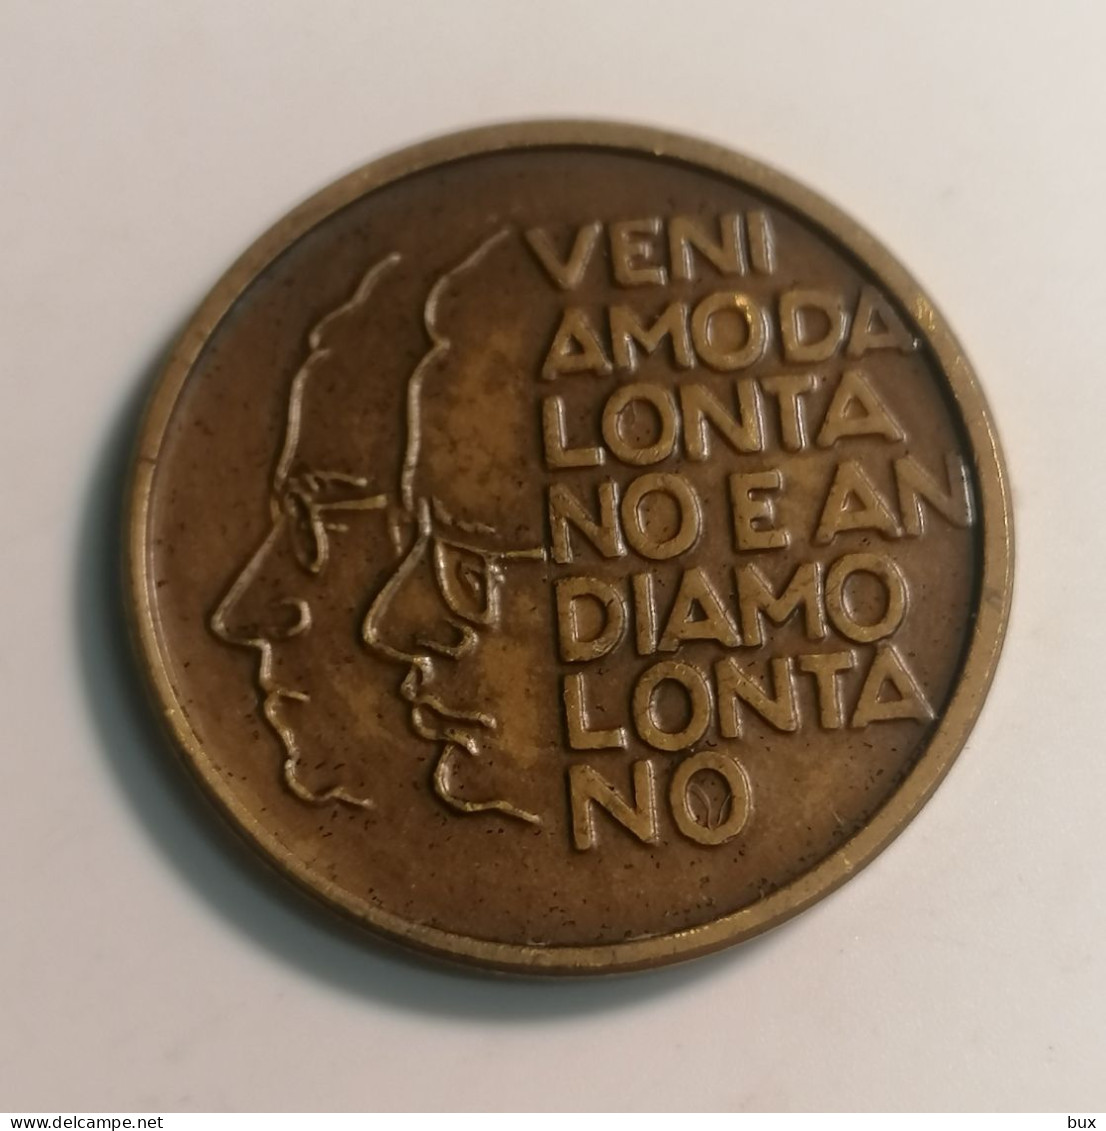 Medaglia 50 Anniversario Fondazione Del Partito Comunista Italiano 1921-1971 Medaglia Medal - Profesionales/De Sociedad